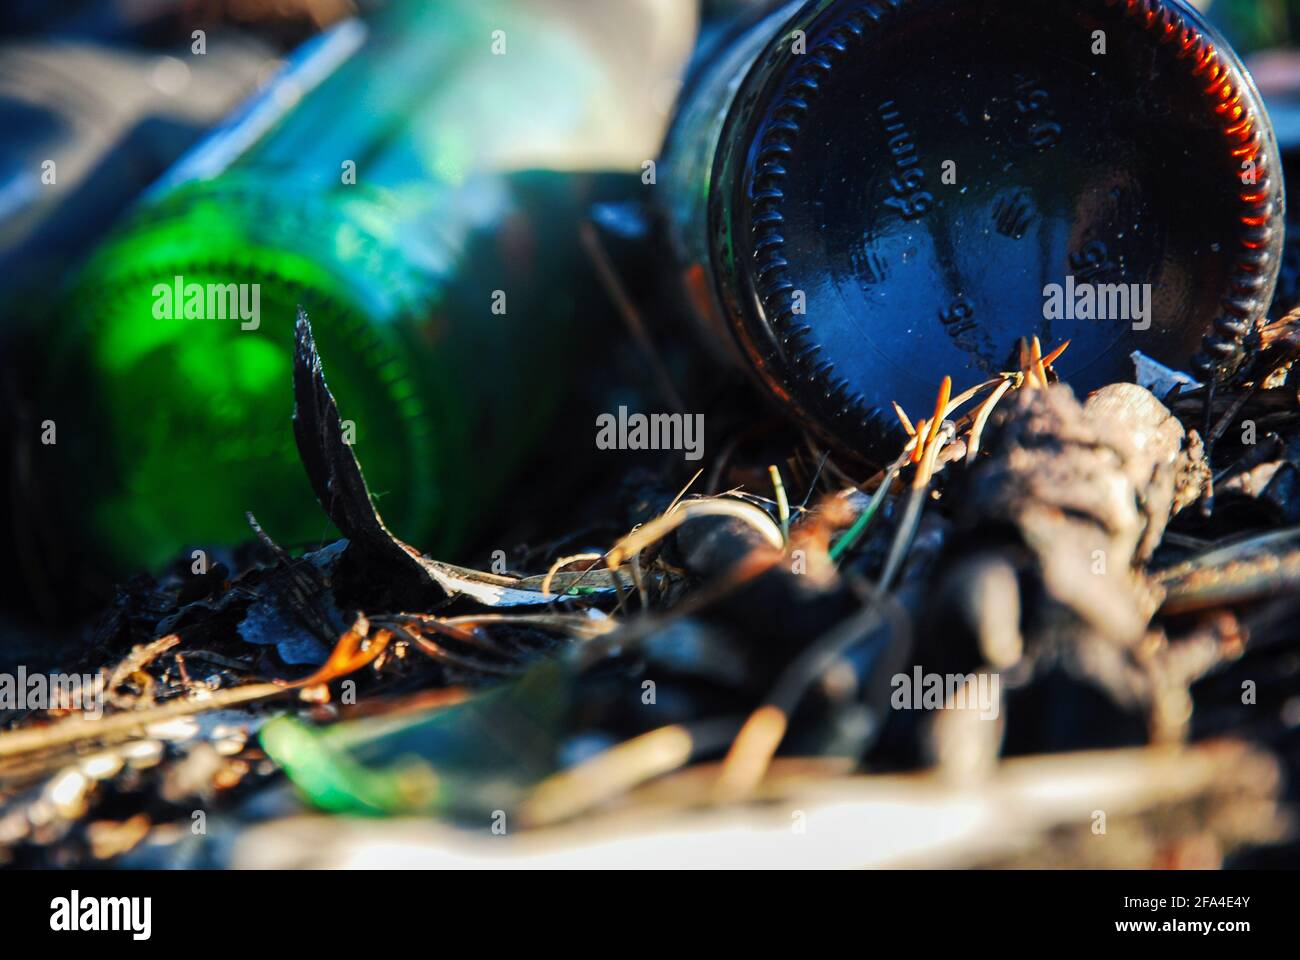 Nahaufnahme von Bierflaschen aus Glas, die im Wald zurückgelassen wurden - Problem der Umweltverschmutzung Stockfoto